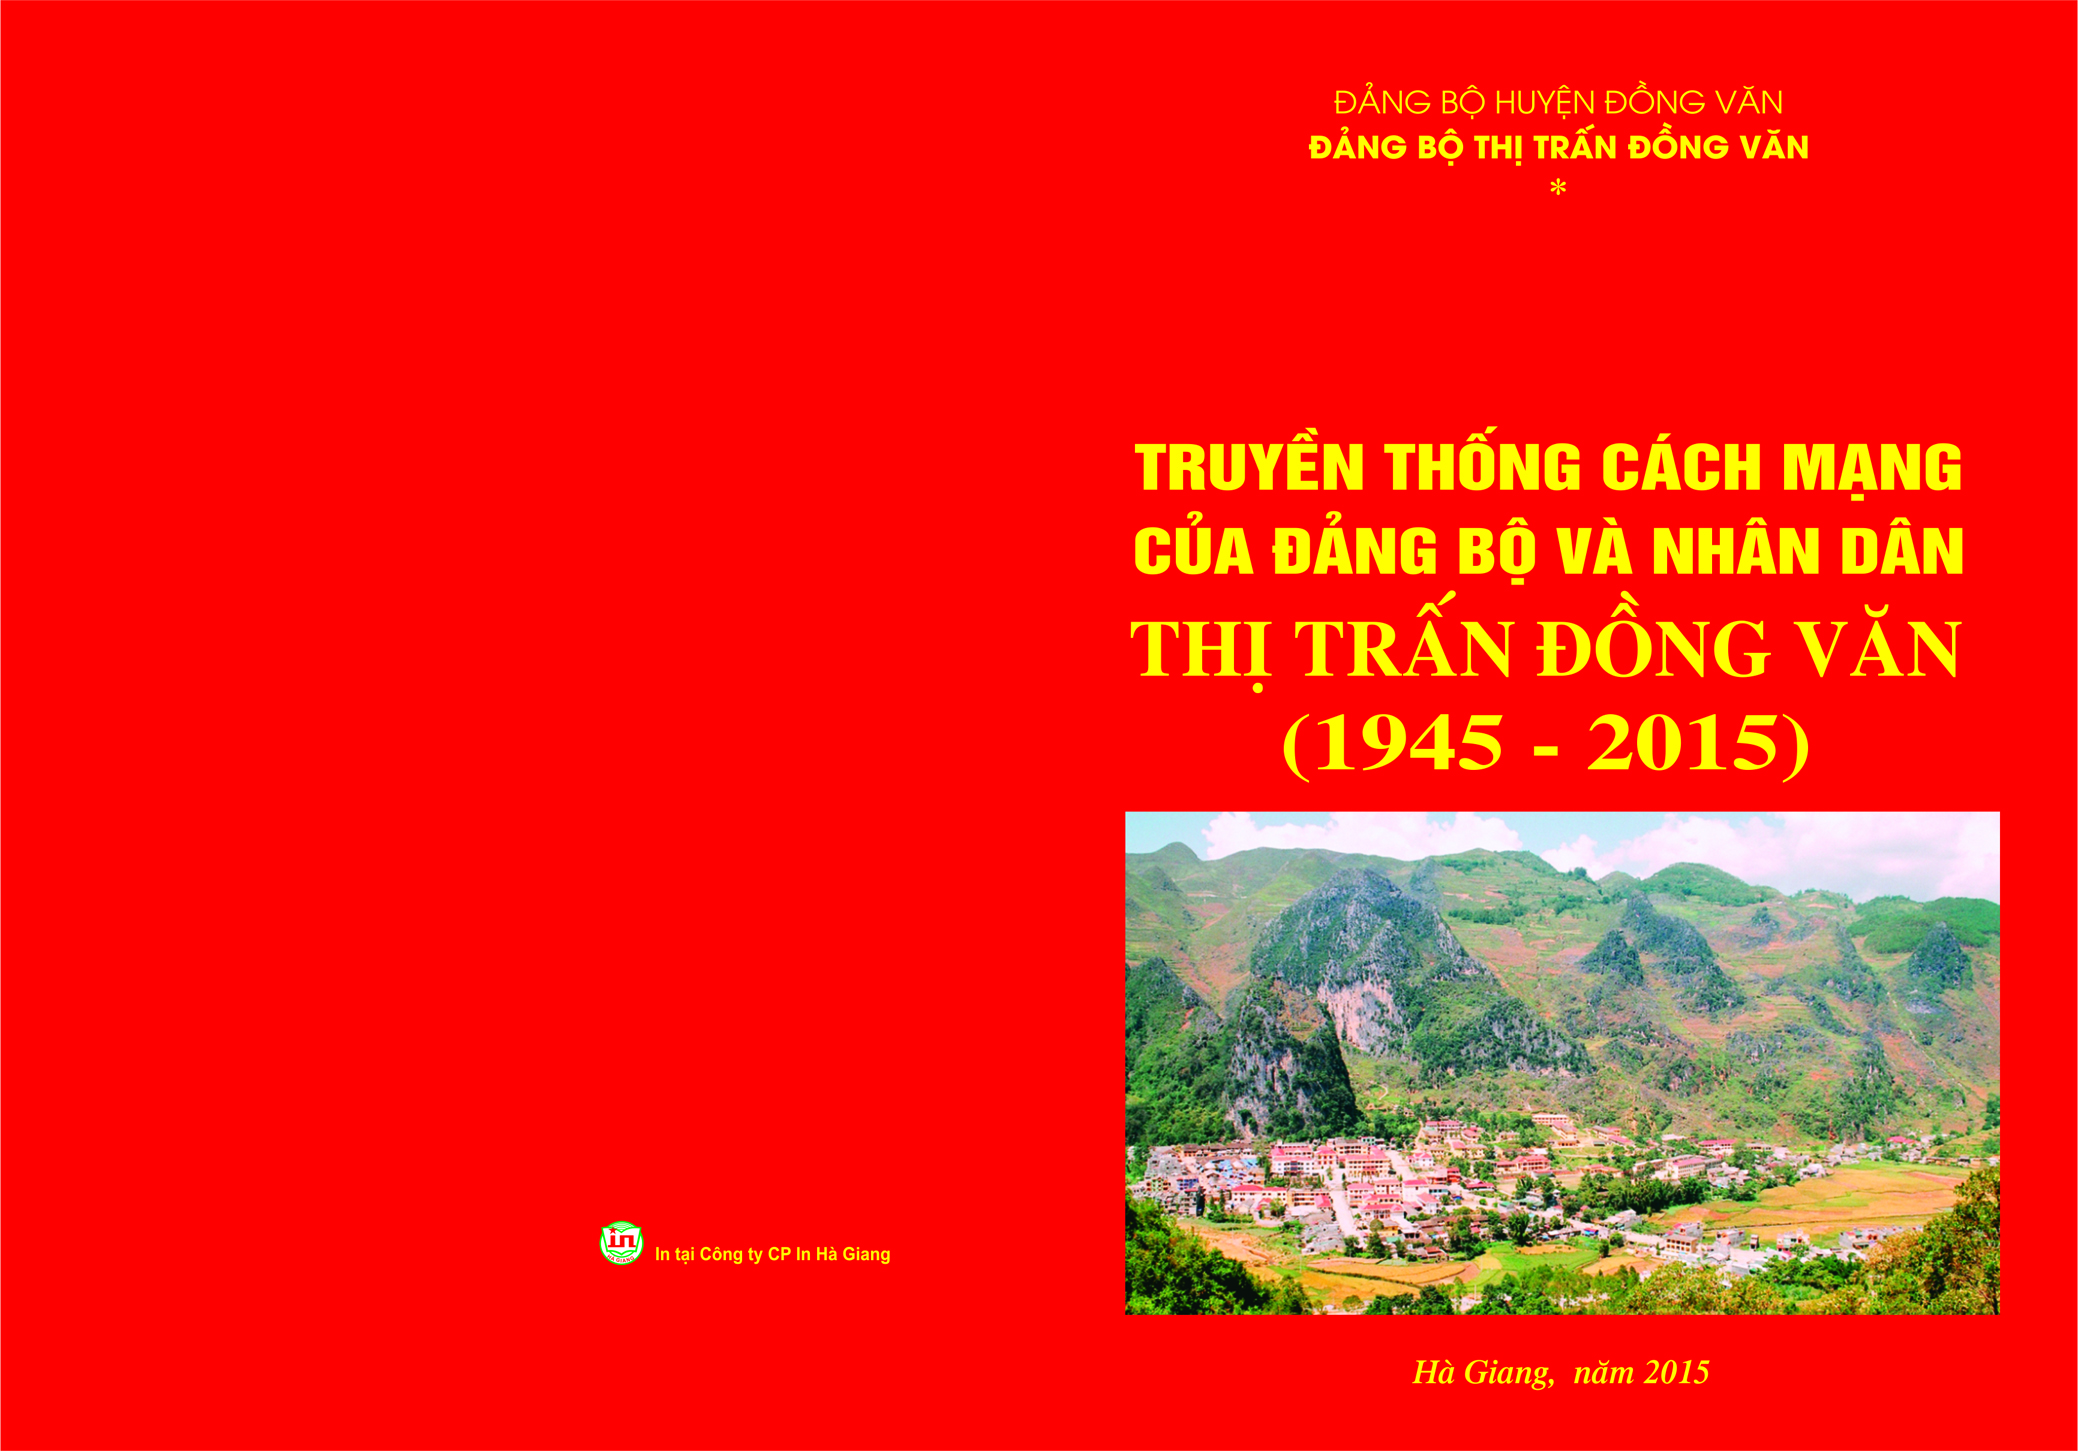 Truyền thống cách mạng của Đảng bộ và nhân dân thị trấn Đồng Văn (phần kết)